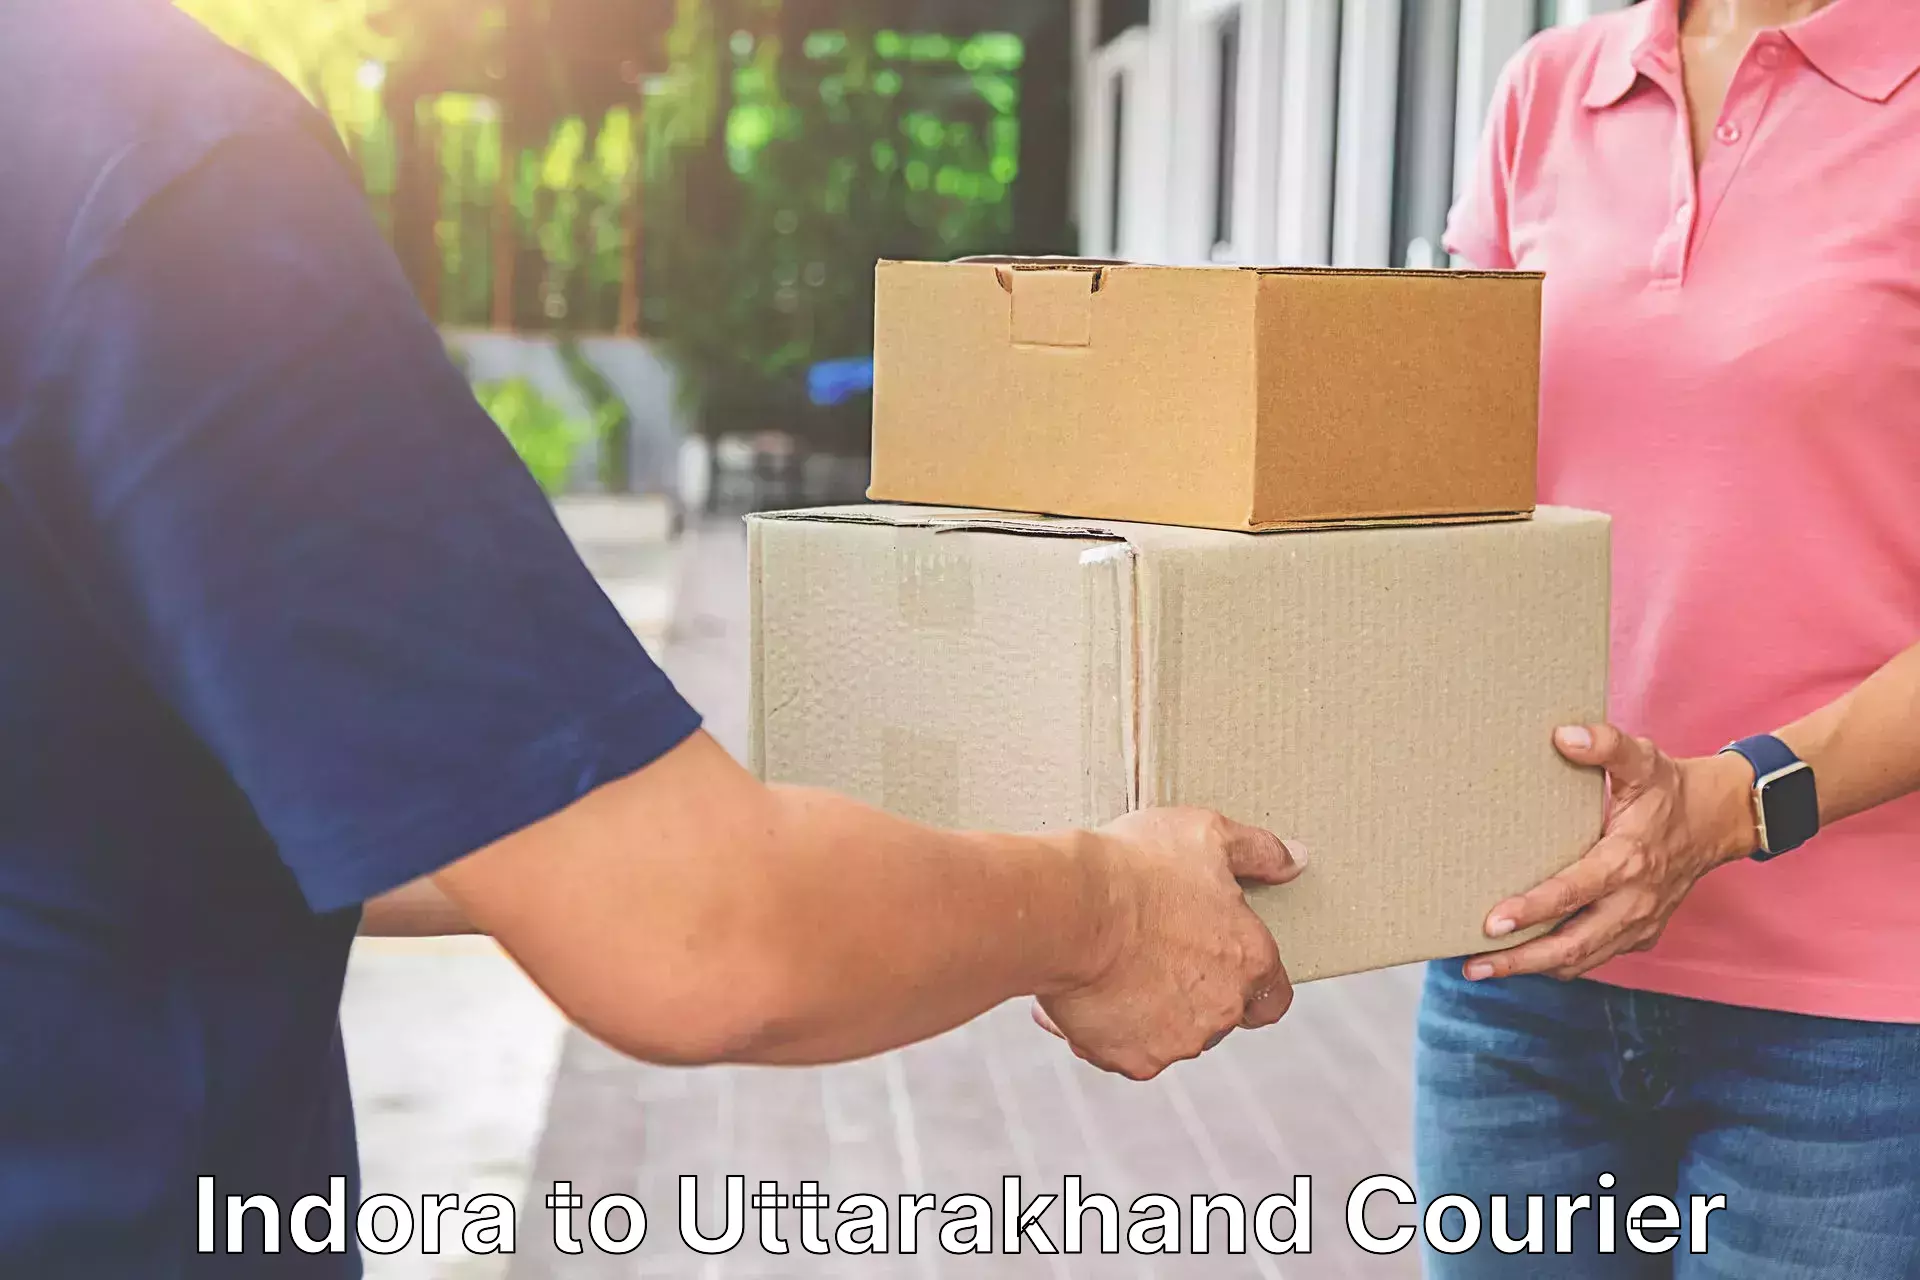 Door-to-door freight service in Indora to Uttarakhand